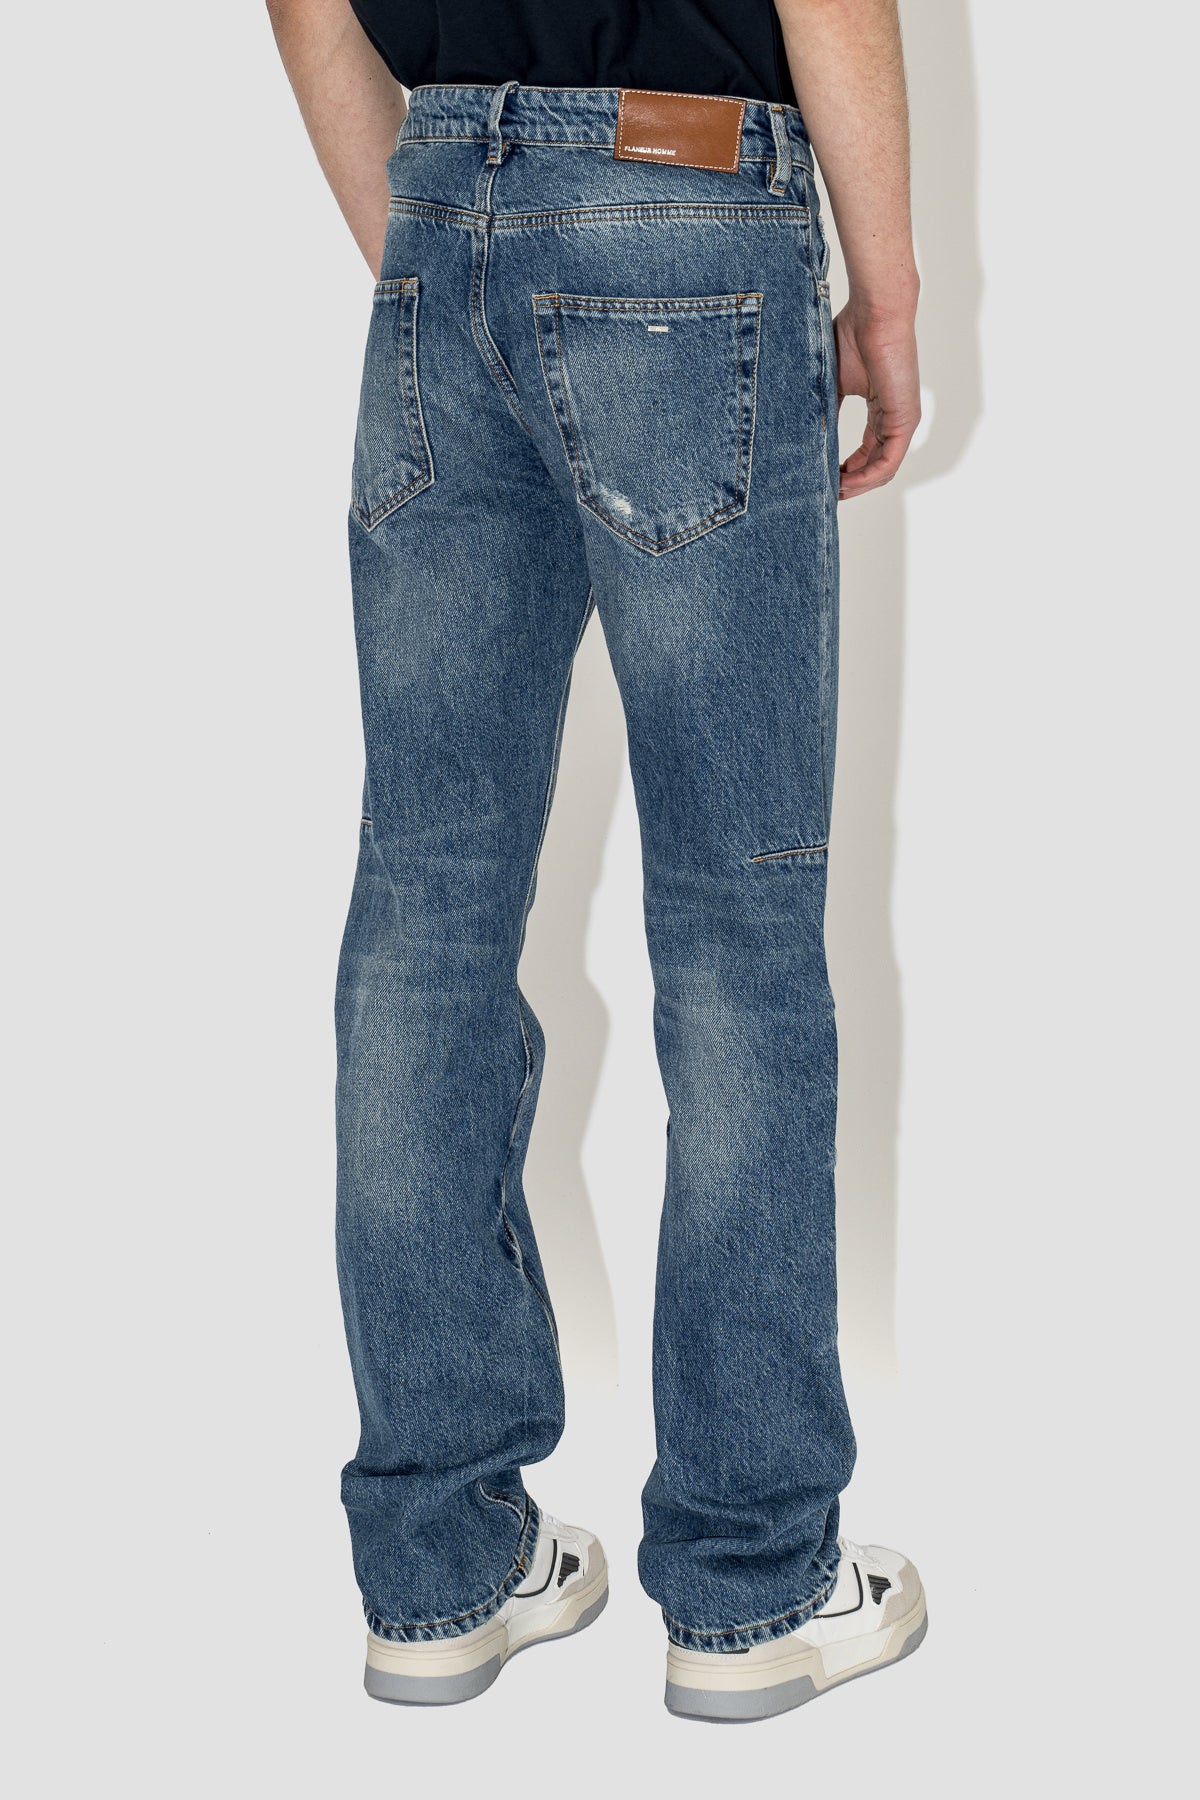 Straight Jeans in Aged Indigo Denim